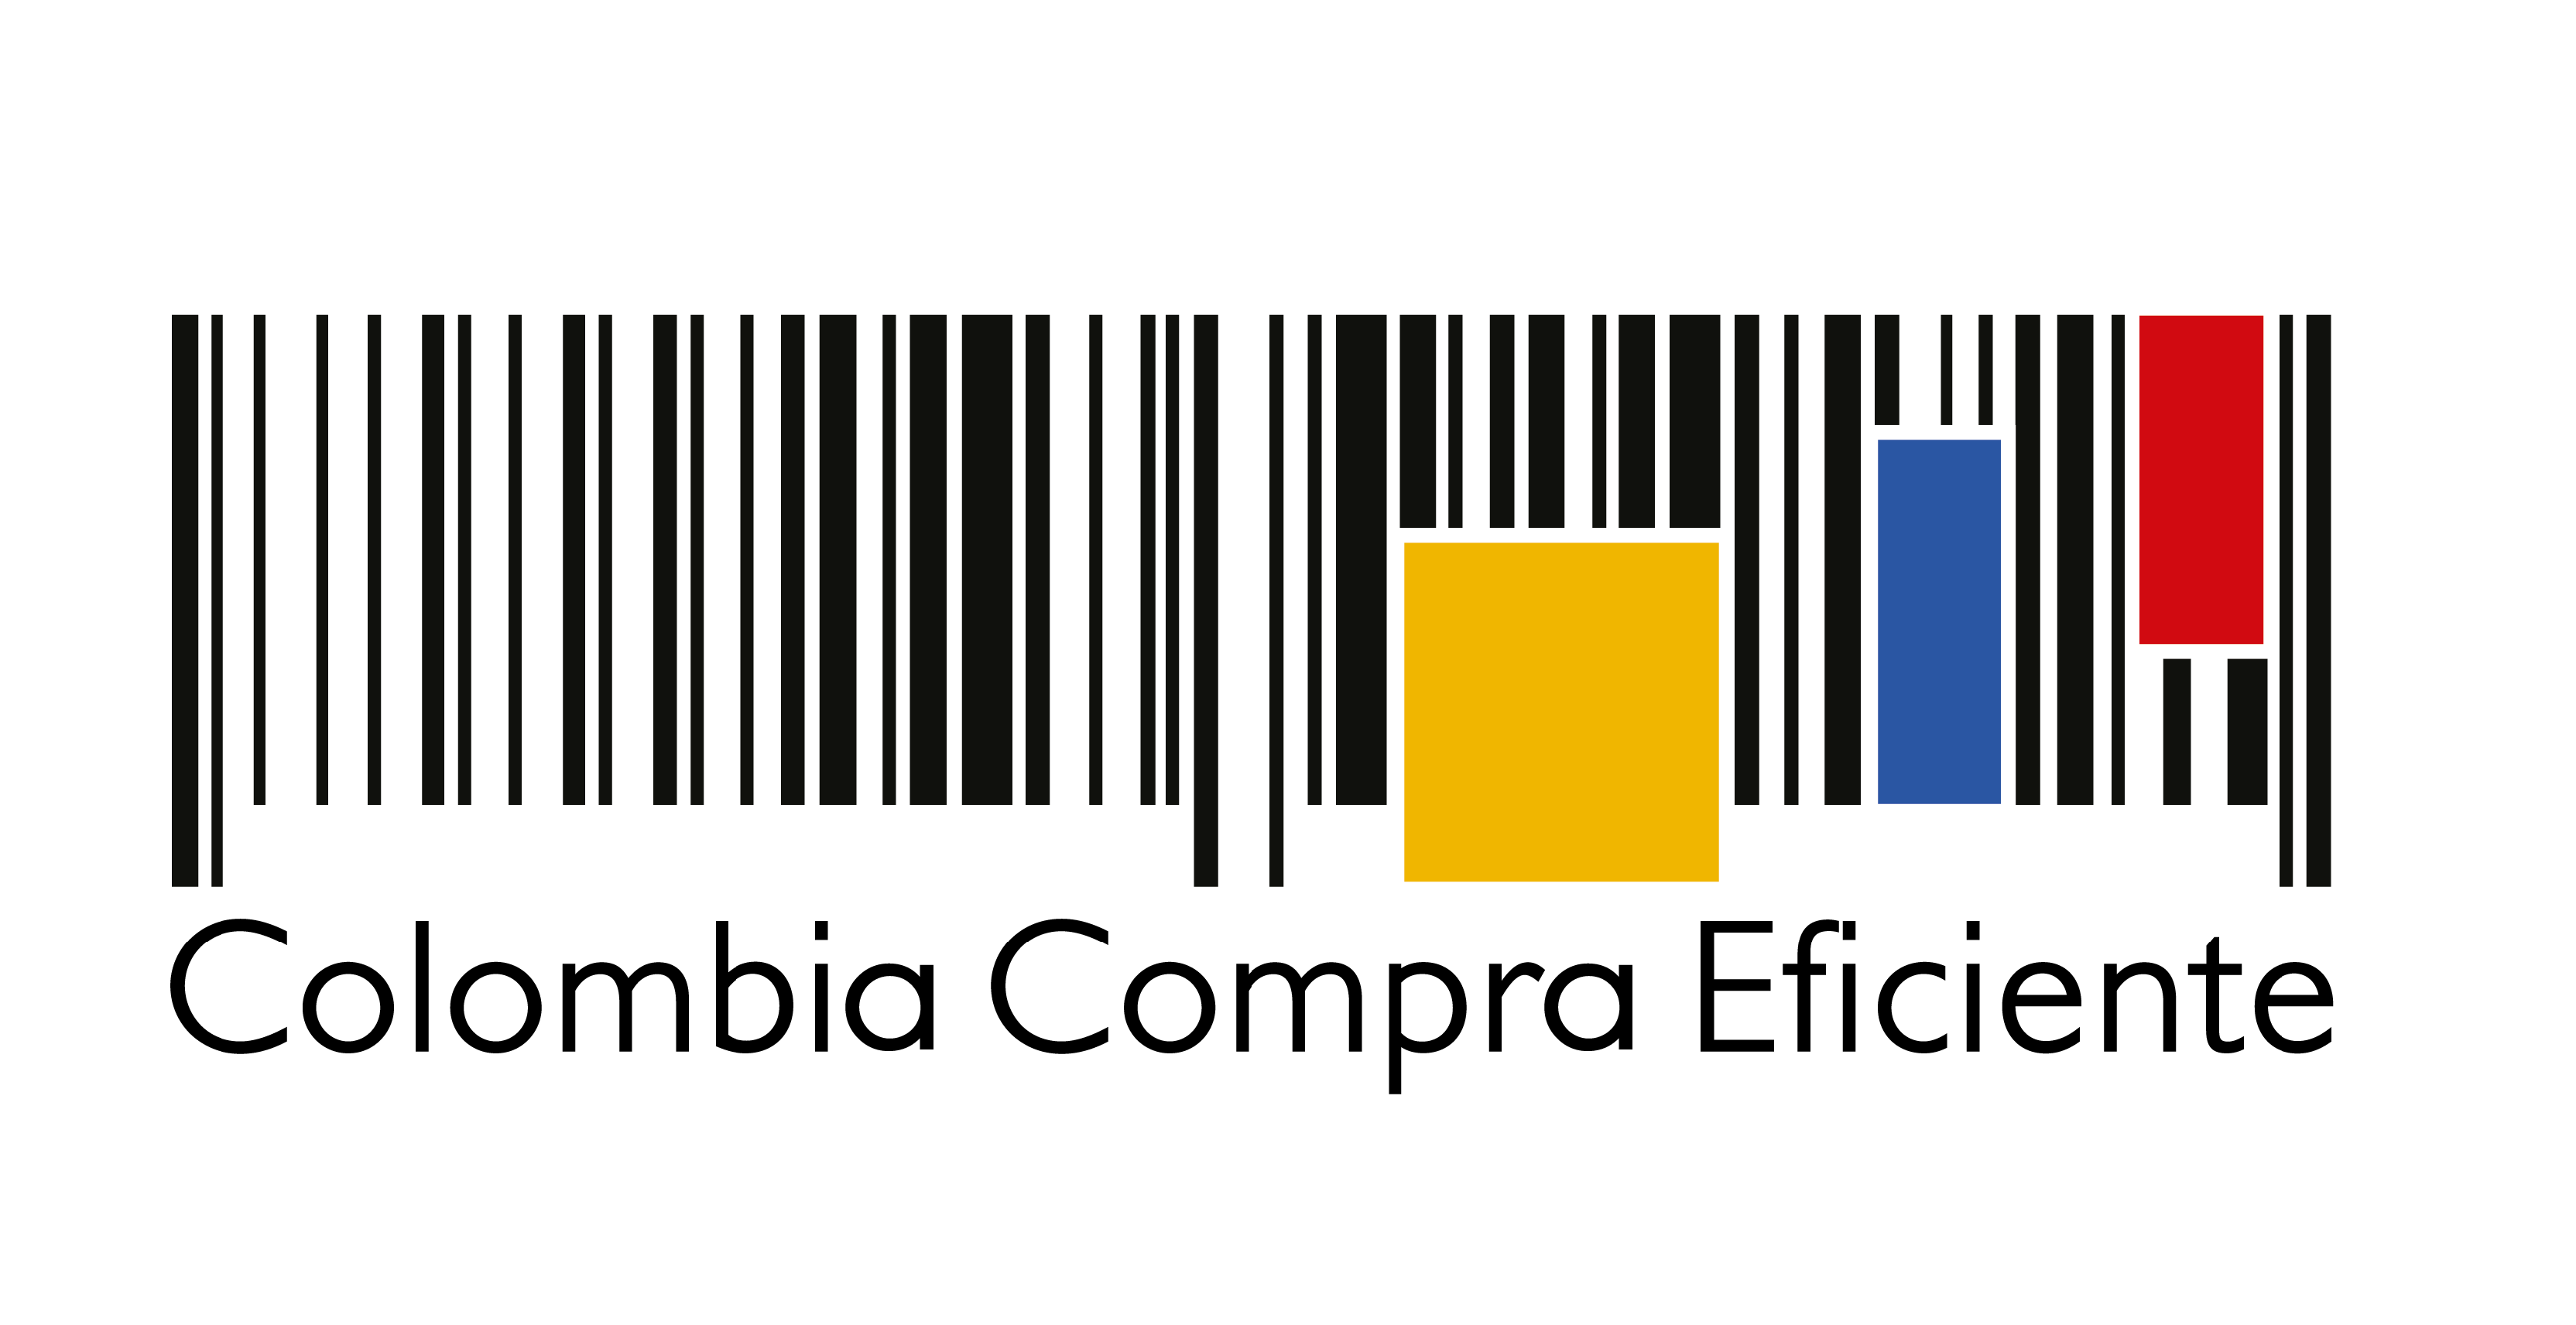 colombia_compra_eficiente.png - 55.90 kB